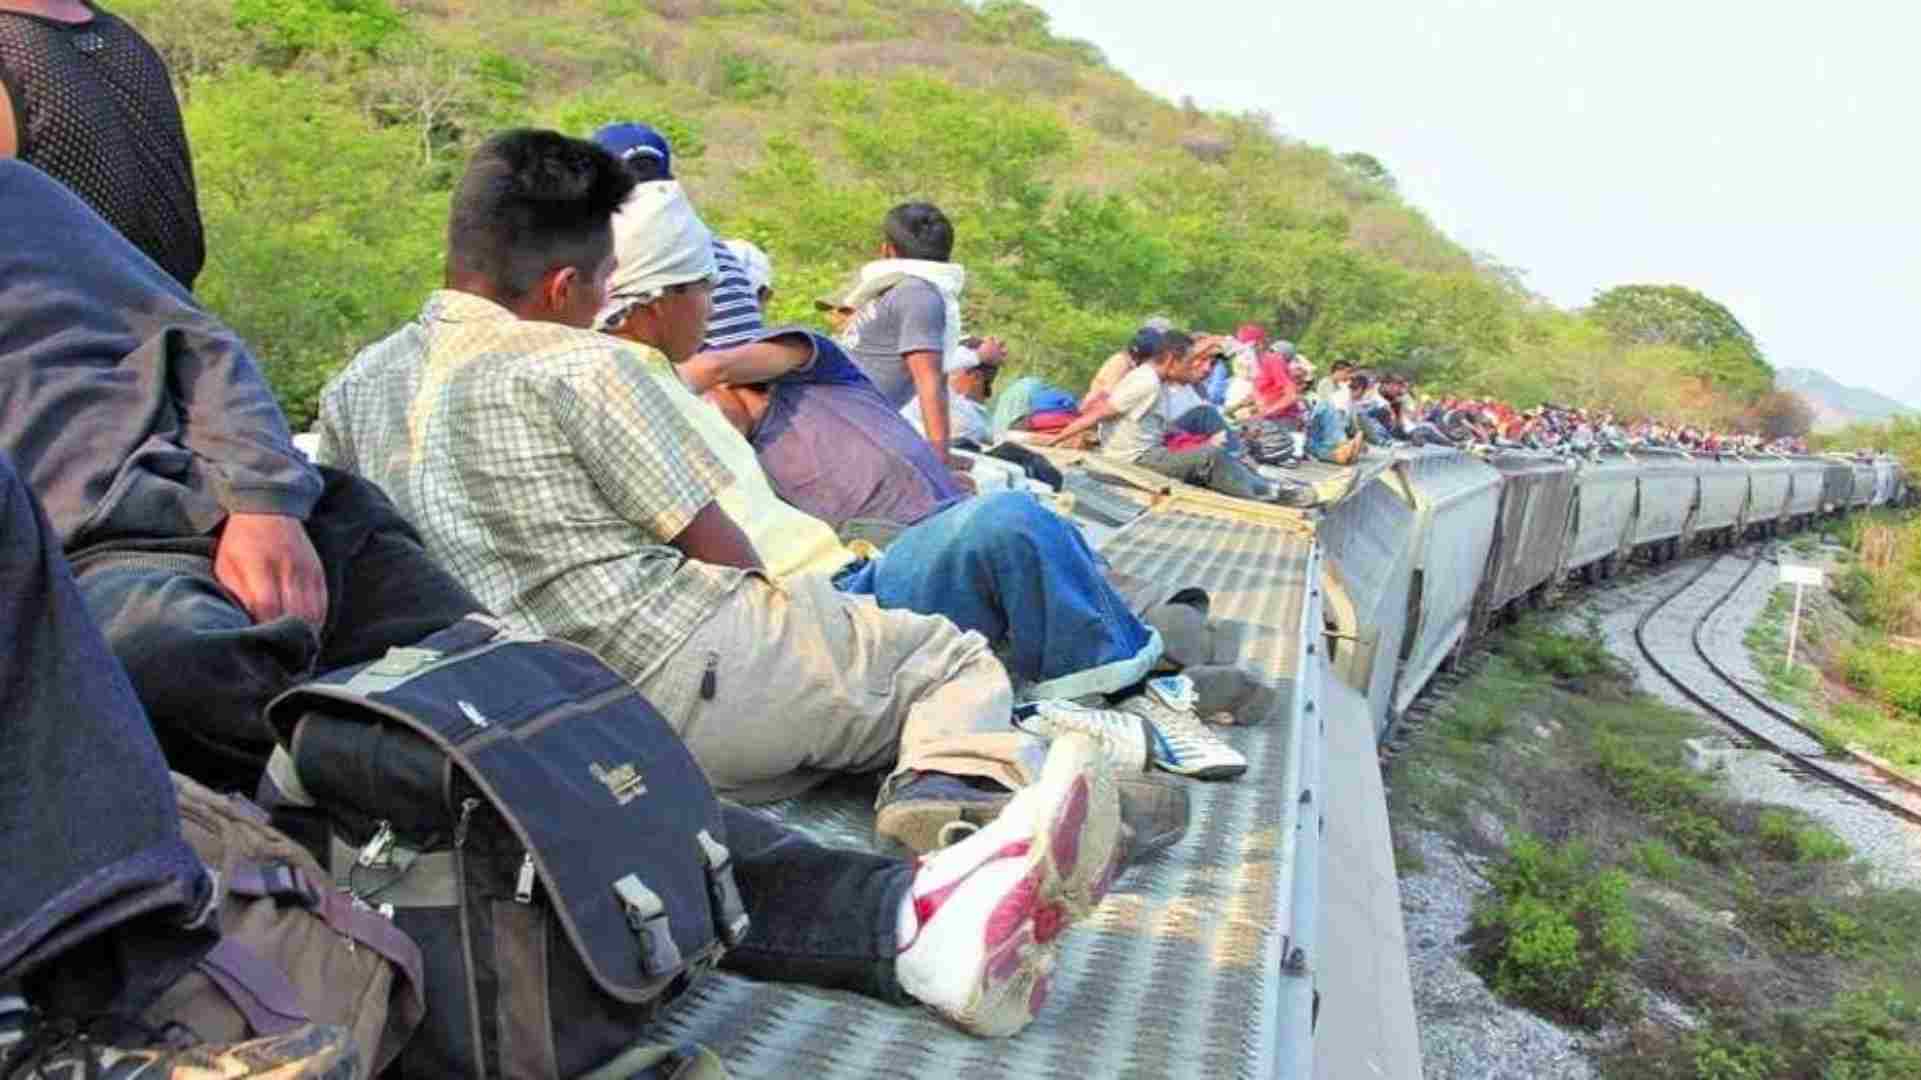 El fotógrafo de una agencia internacional de noticias captó a la hondureña persiguiendo su sueño americano tratando de alcanzar la máquina utilizada por los migrantes para cruzar México.